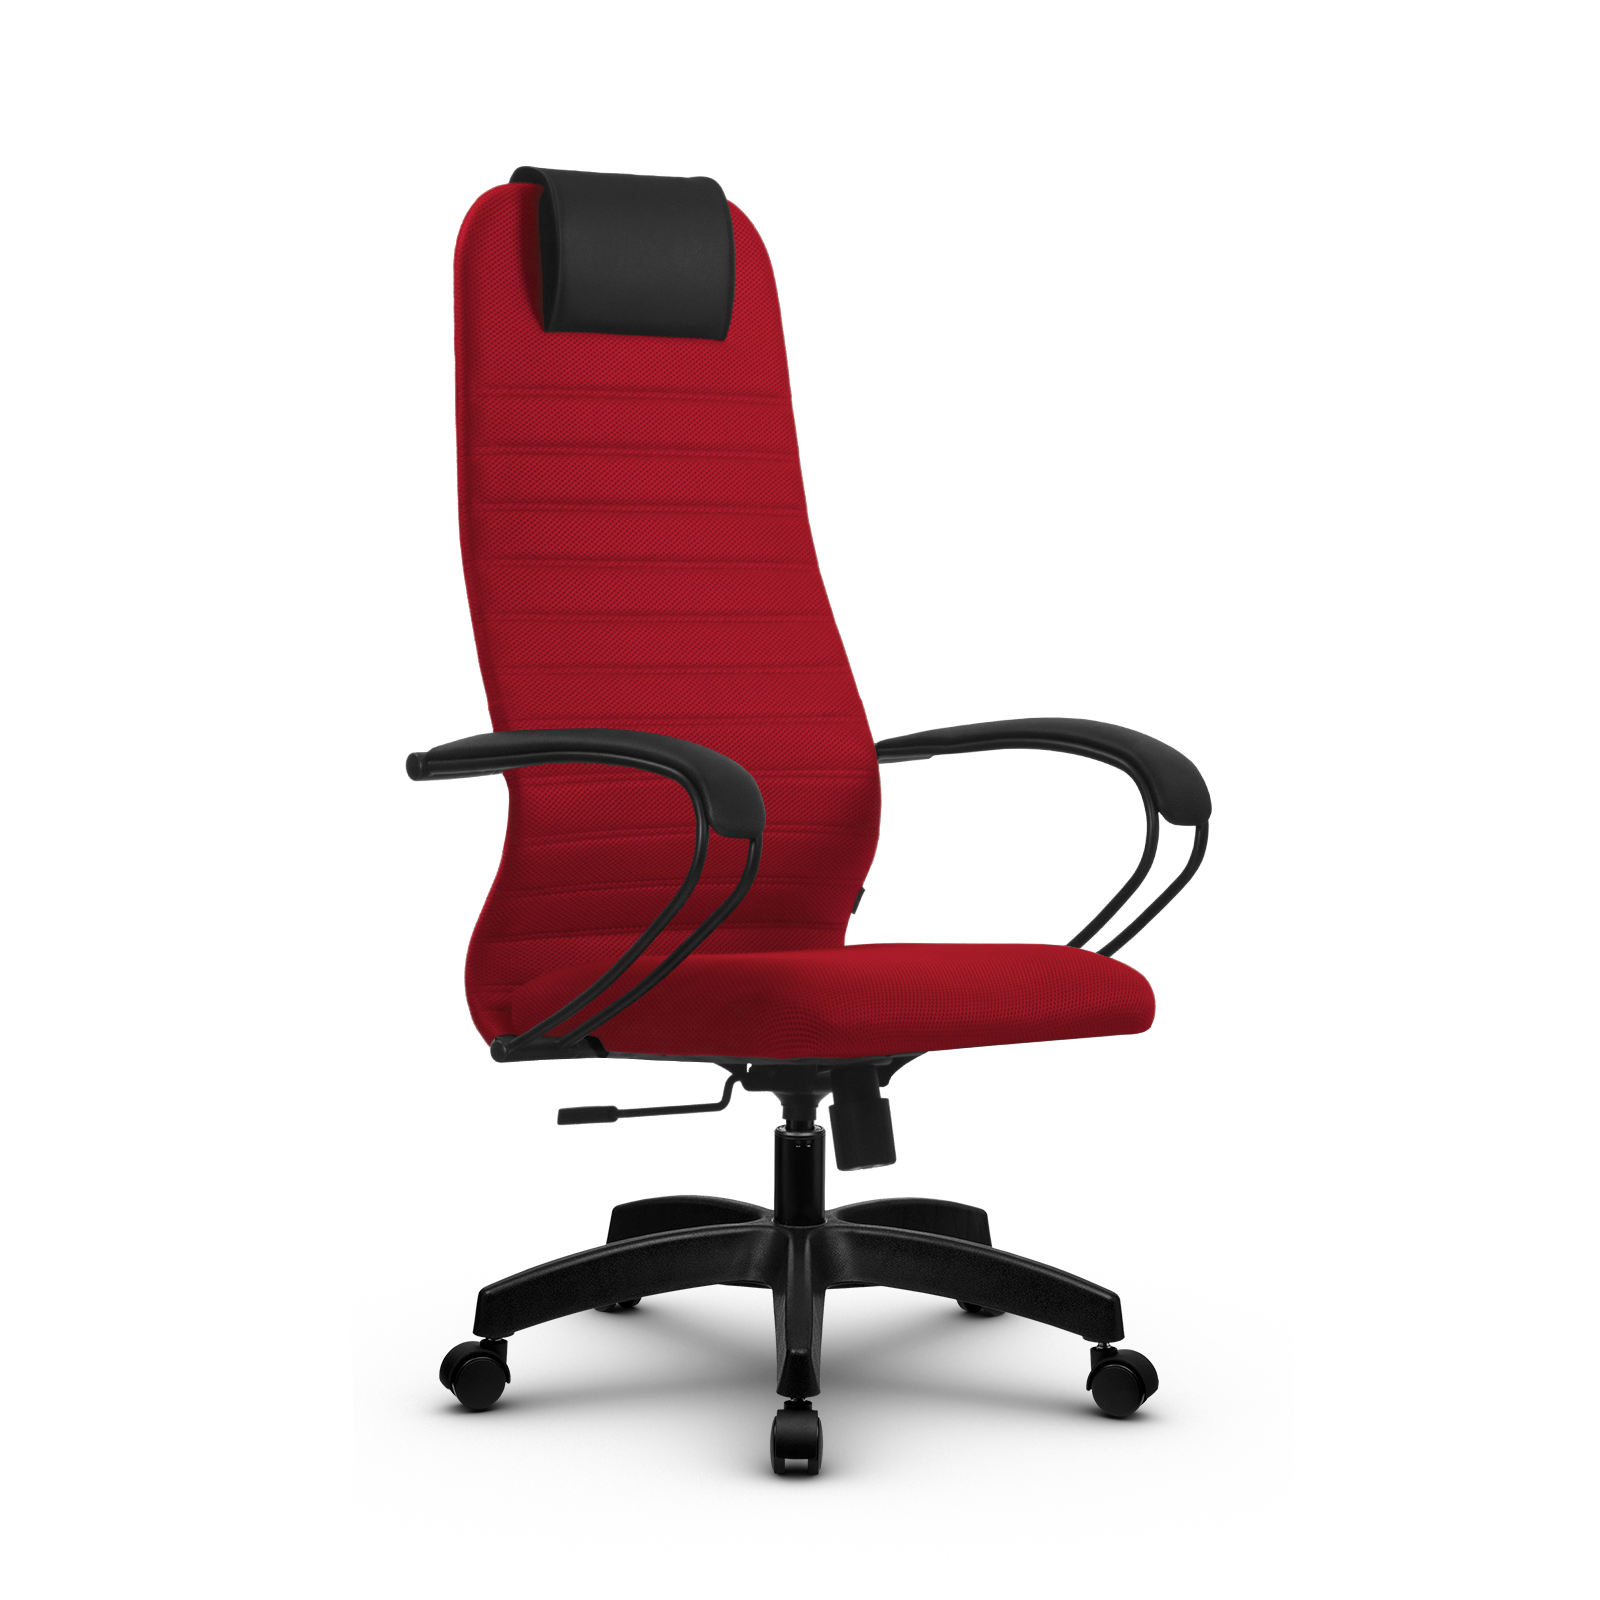 90488605 Офисное кресло Su z312471328 прочный сетчатый материал цвет красный STLM-0248483 МЕТТА